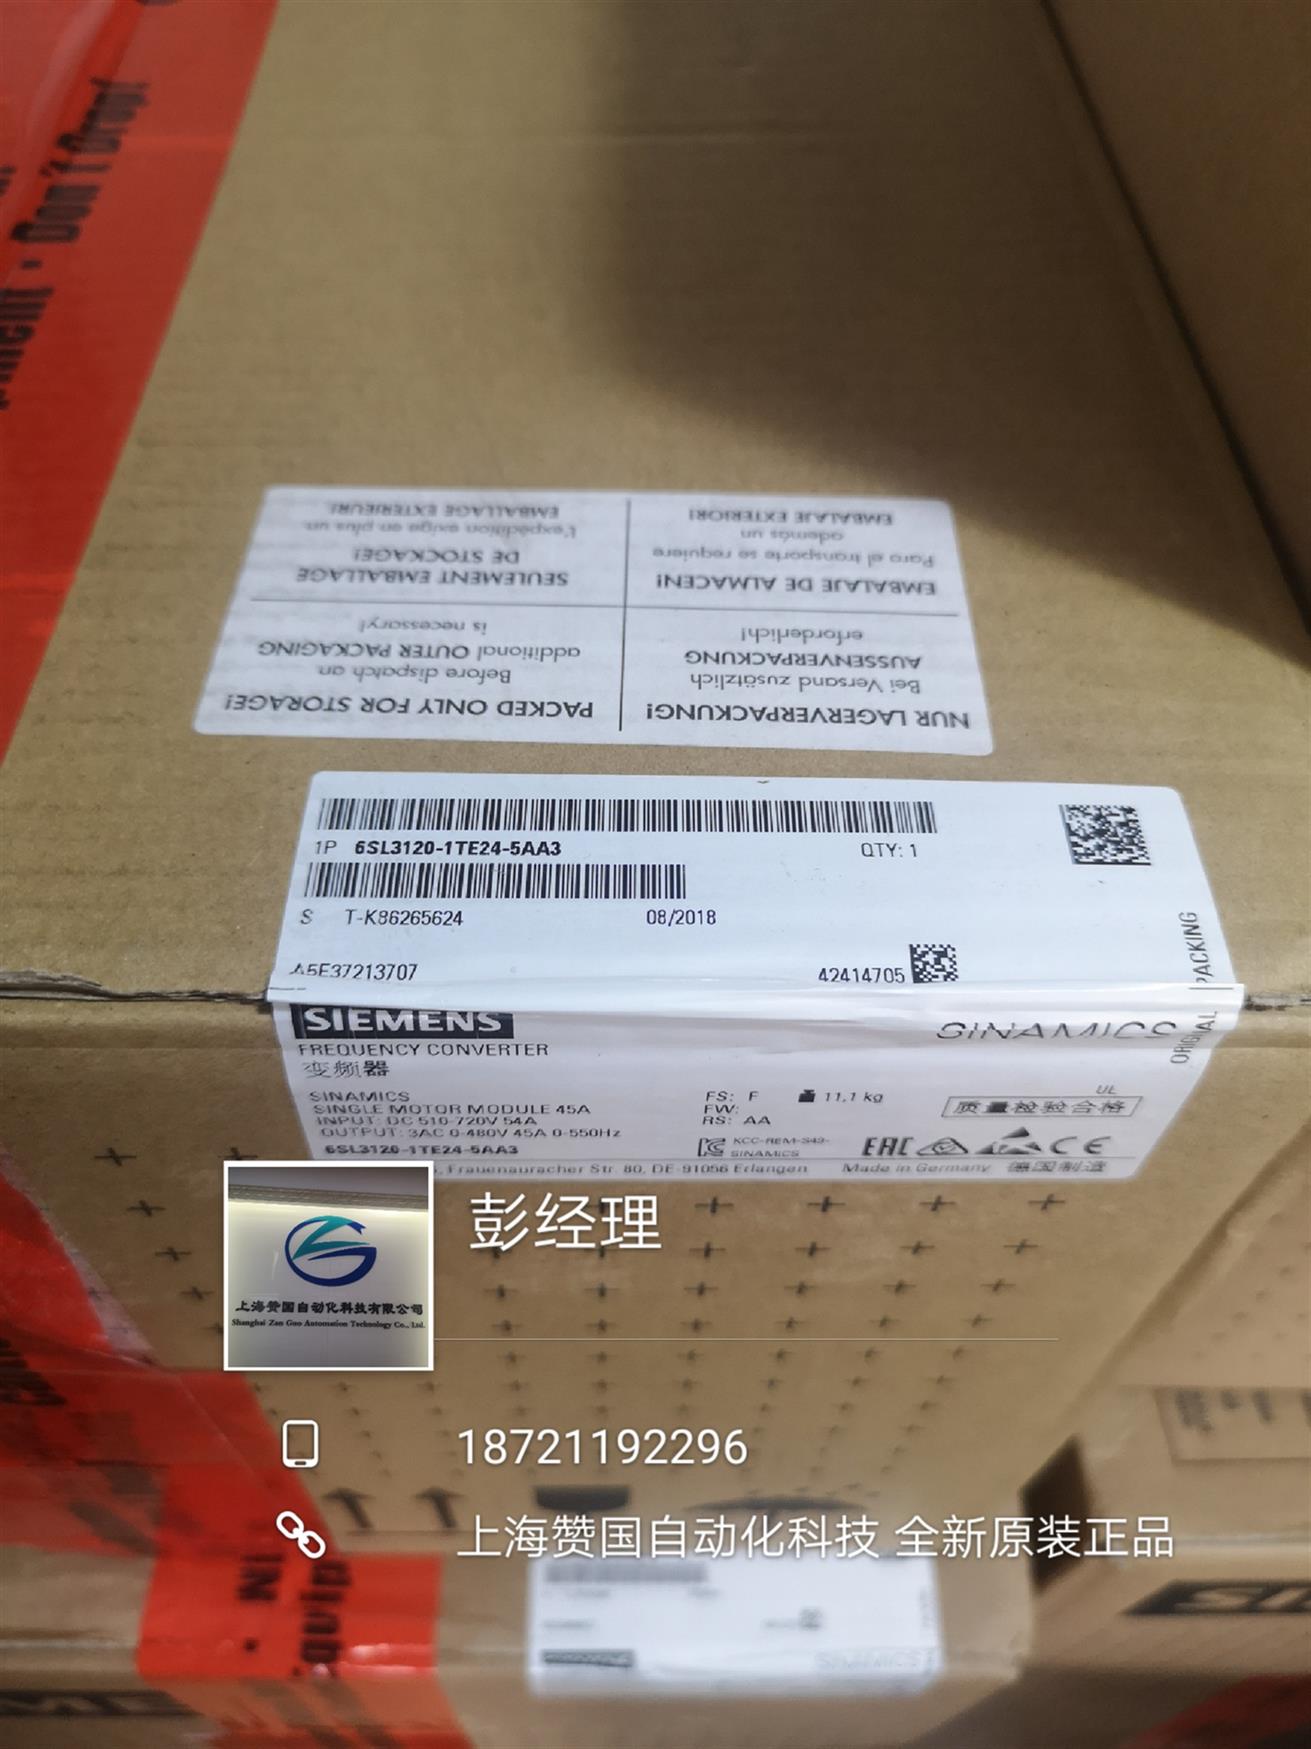 安徽上海赞国科技西门子S120电机模块优势商家供应商 西门子S120单机模块